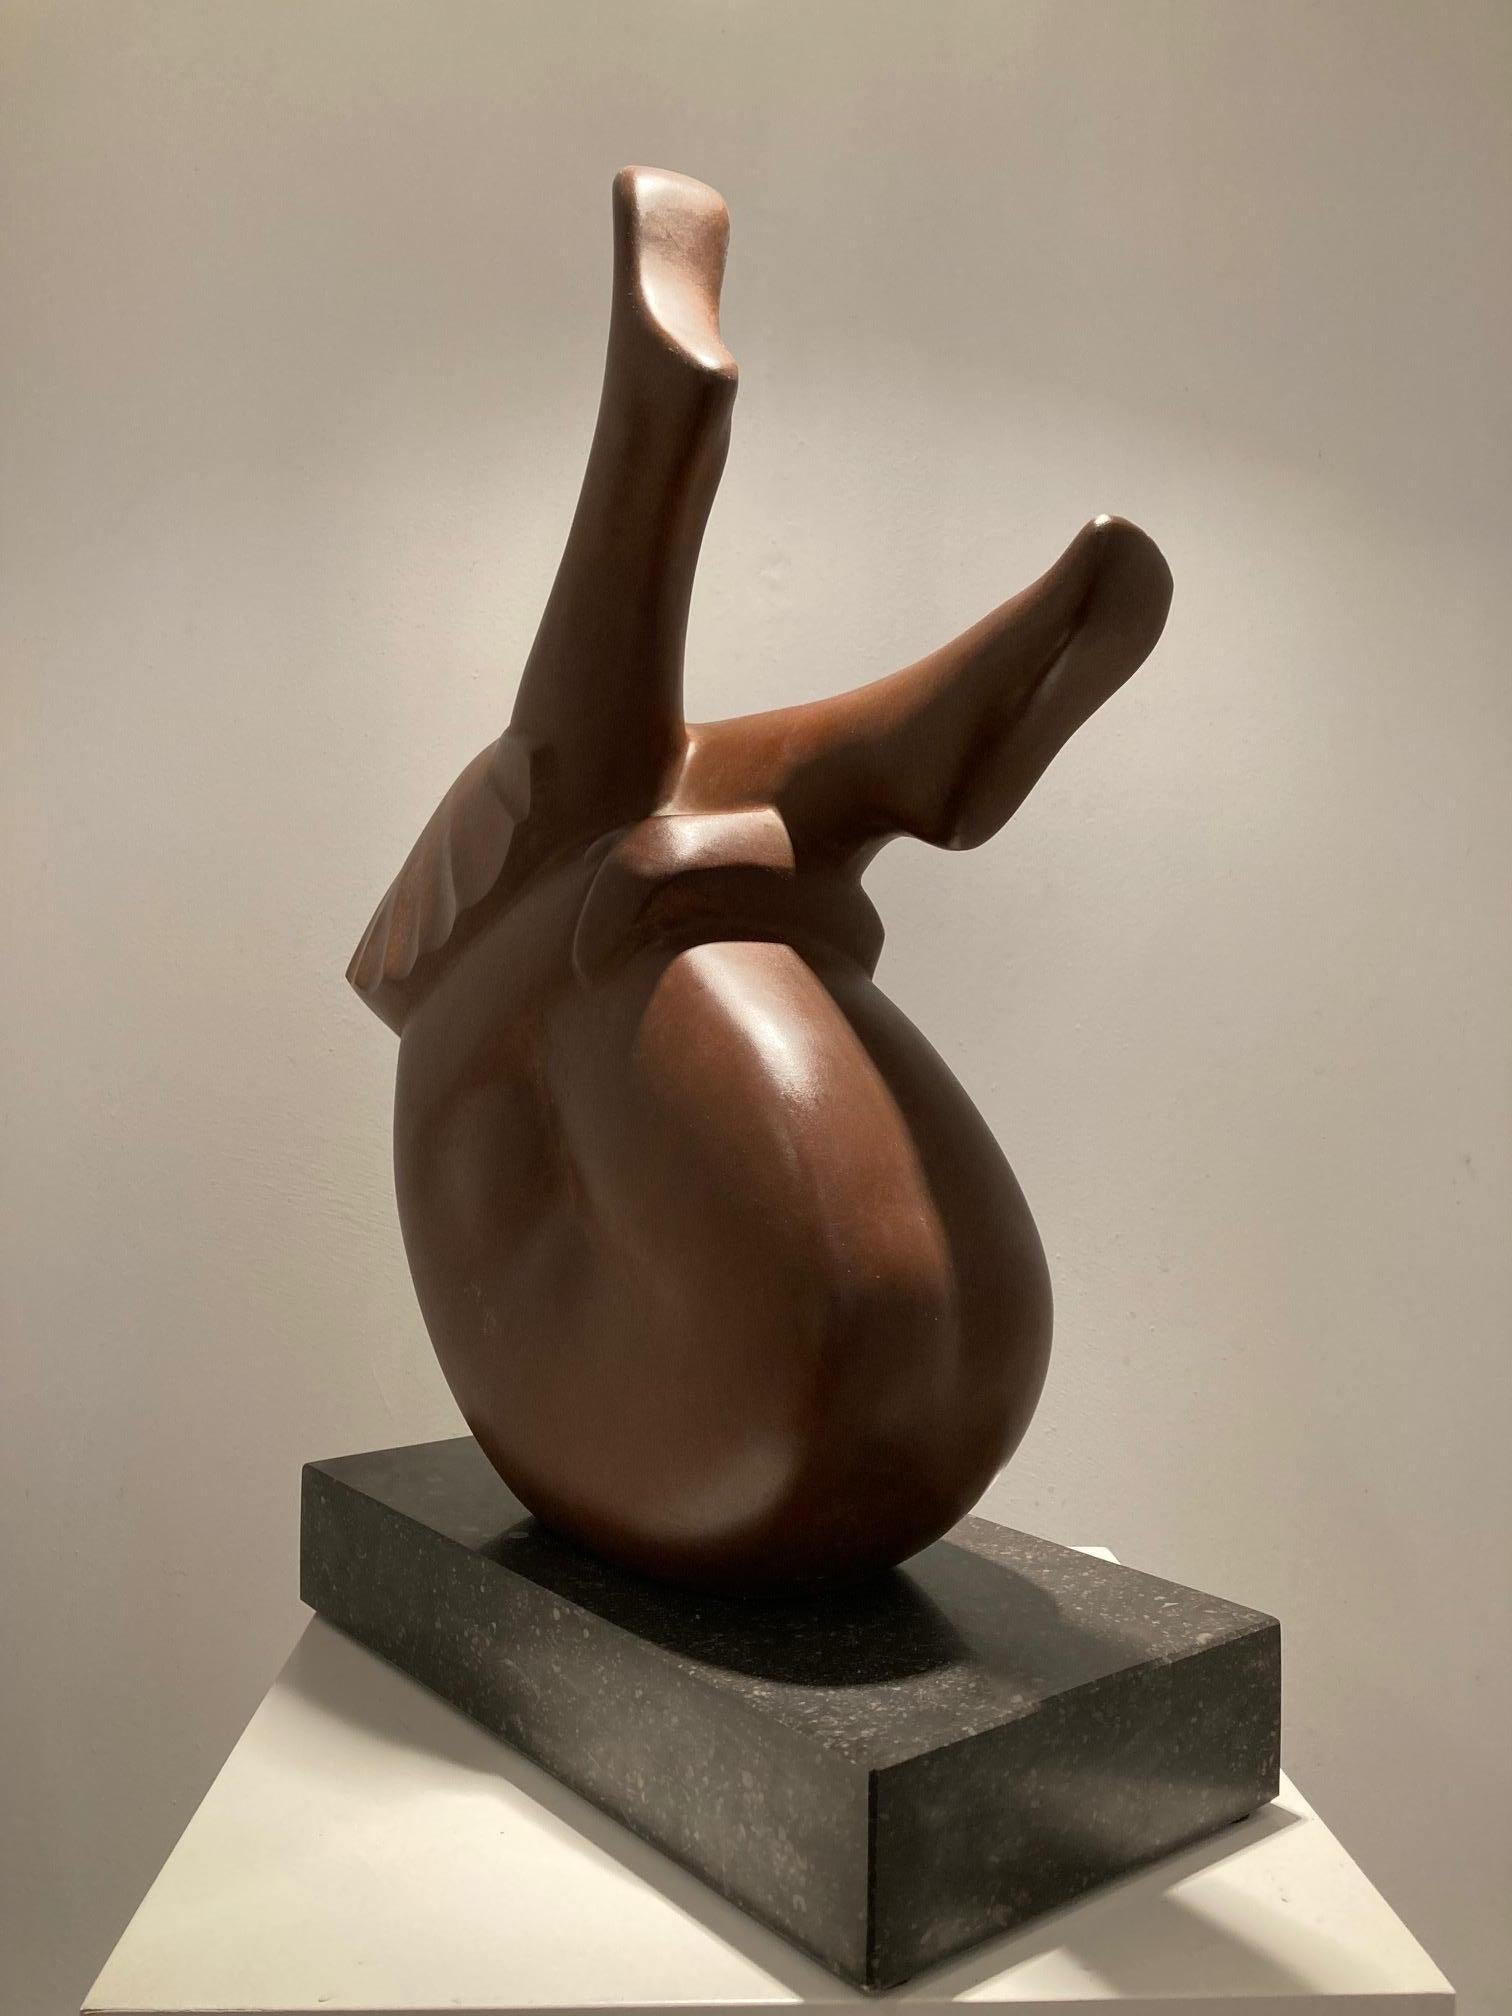 Liggend Meisje, jeune fille allongée, sculpture en bronze, édition limitée en stock - Contemporain Sculpture par Evert den Hartog